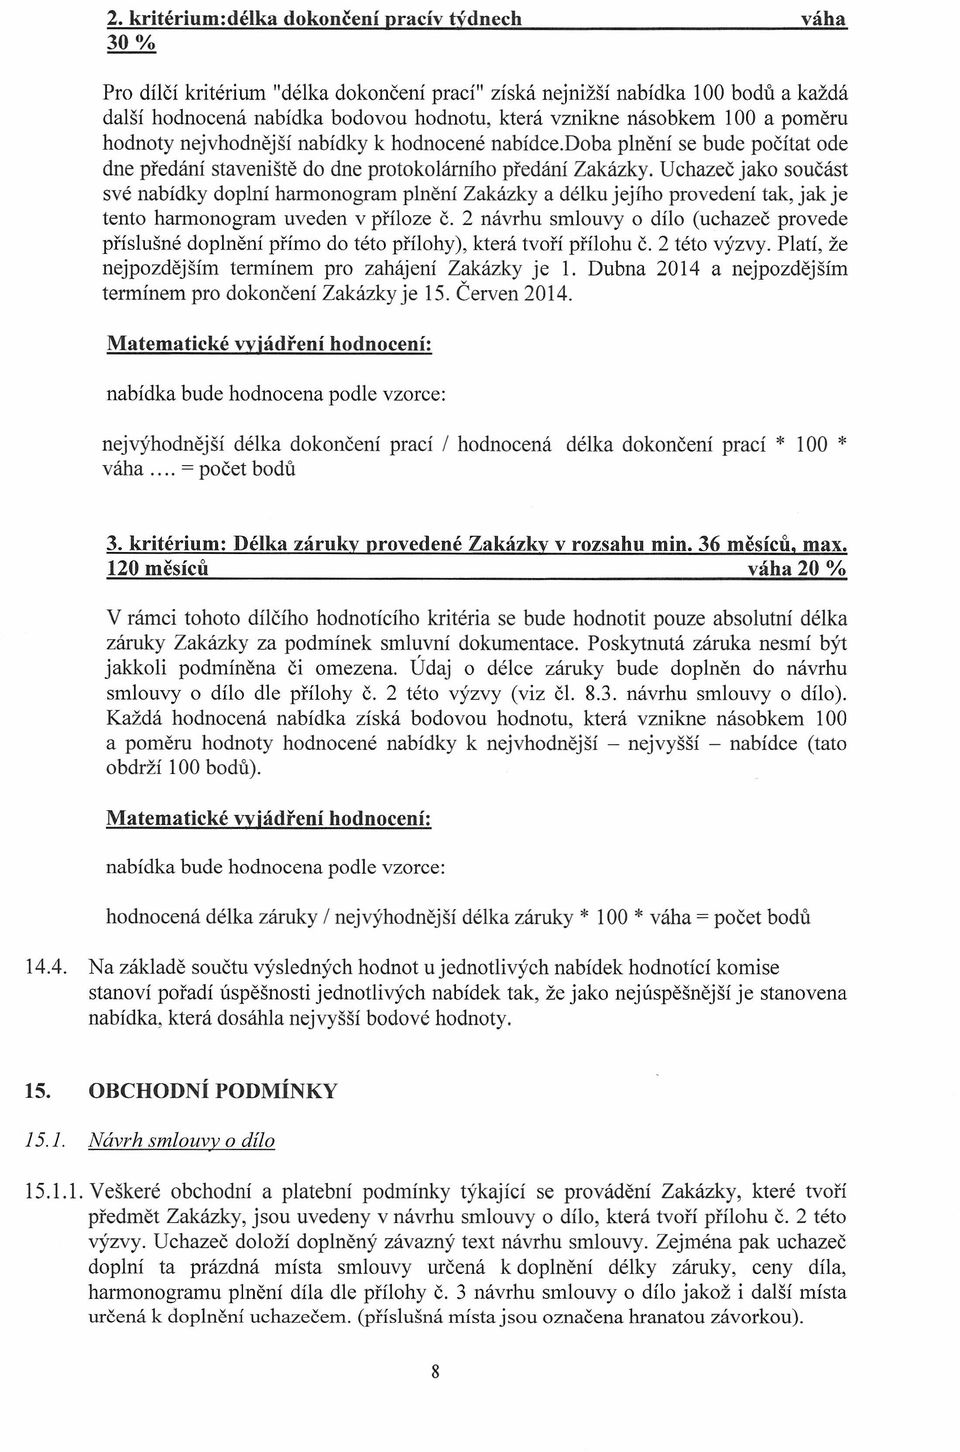 Uchazeč jako součást své nabídky doplní harmonogram plnění Zakázky a délku jejího provedení tak, jak je tento harmonogram uveden v příloze č.